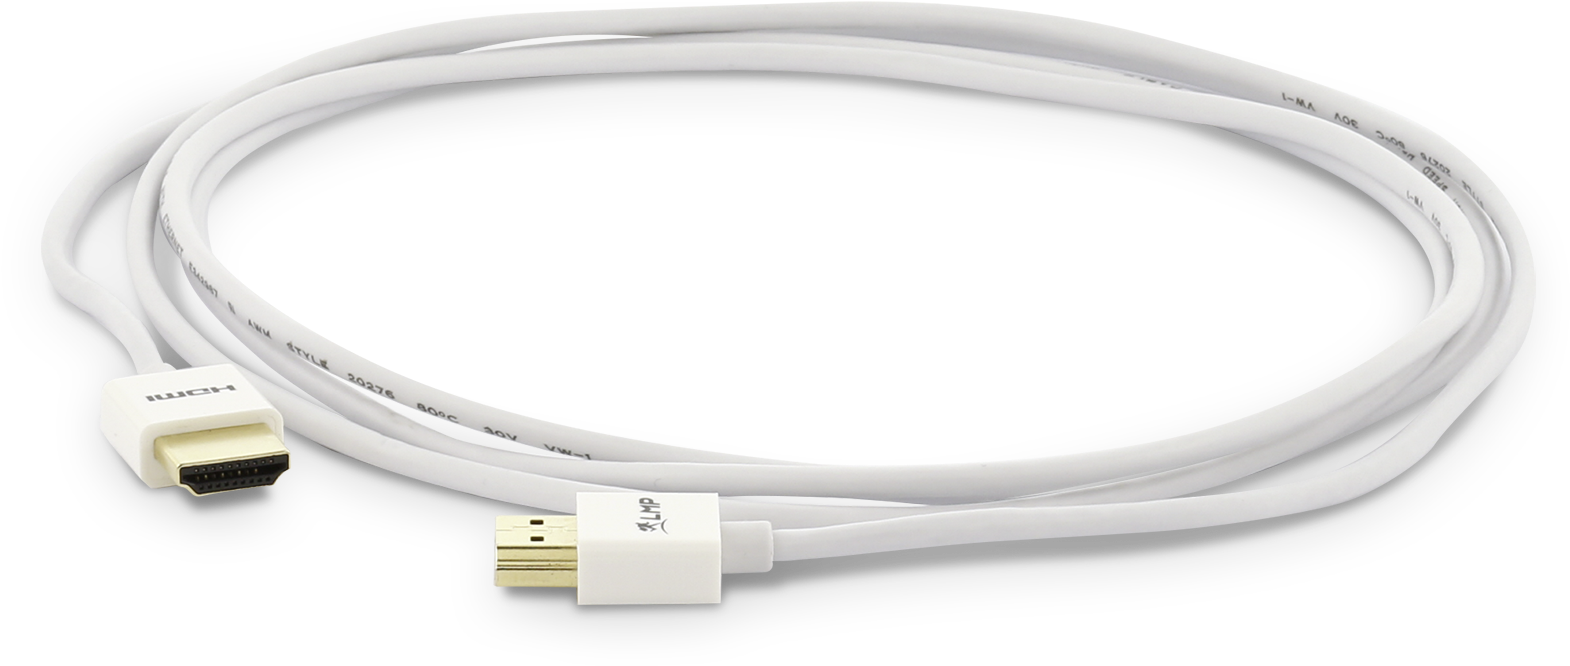 Lmp Hdmi - Usb Cable Clipart (1900x665), Png Download